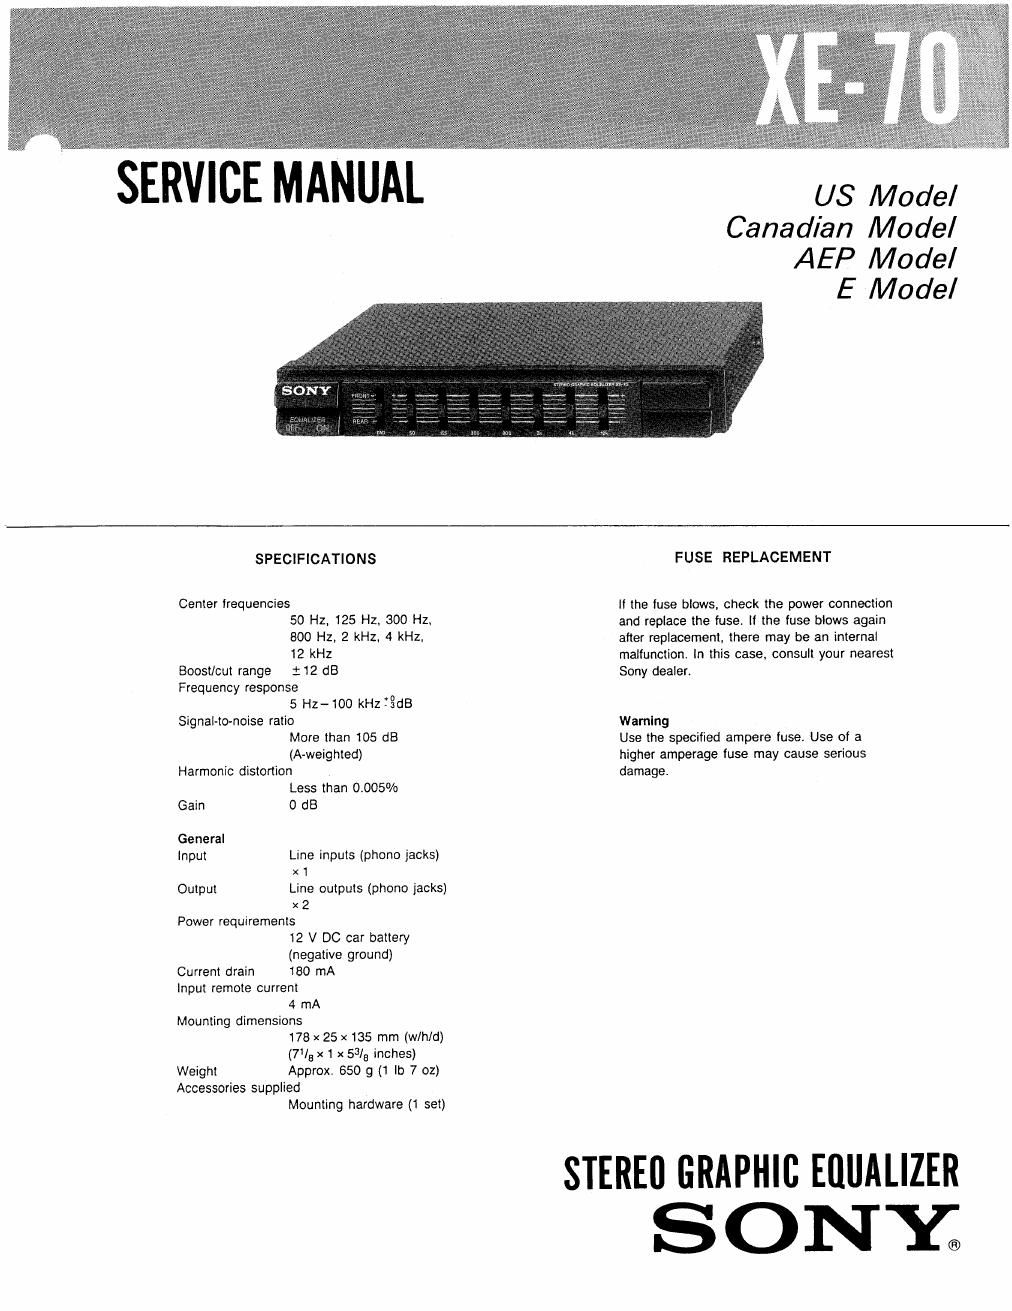 sony xe 70 service manual